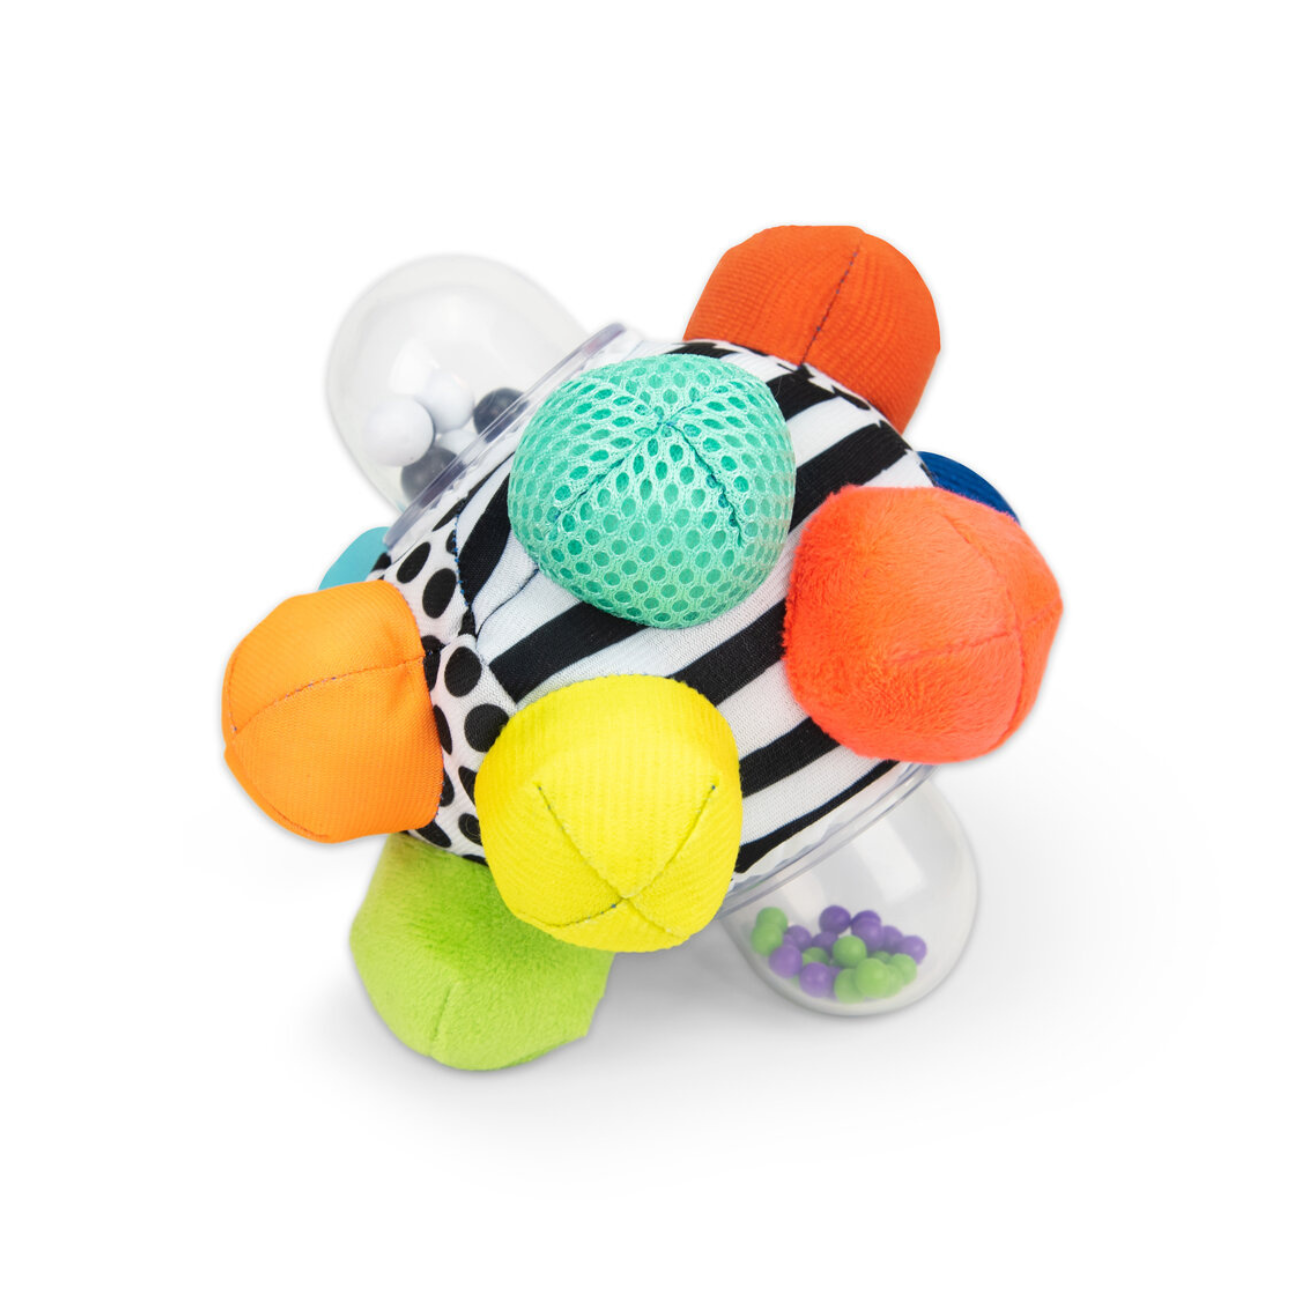 Juguete Sassy pelota con sonido y variedad de texturas